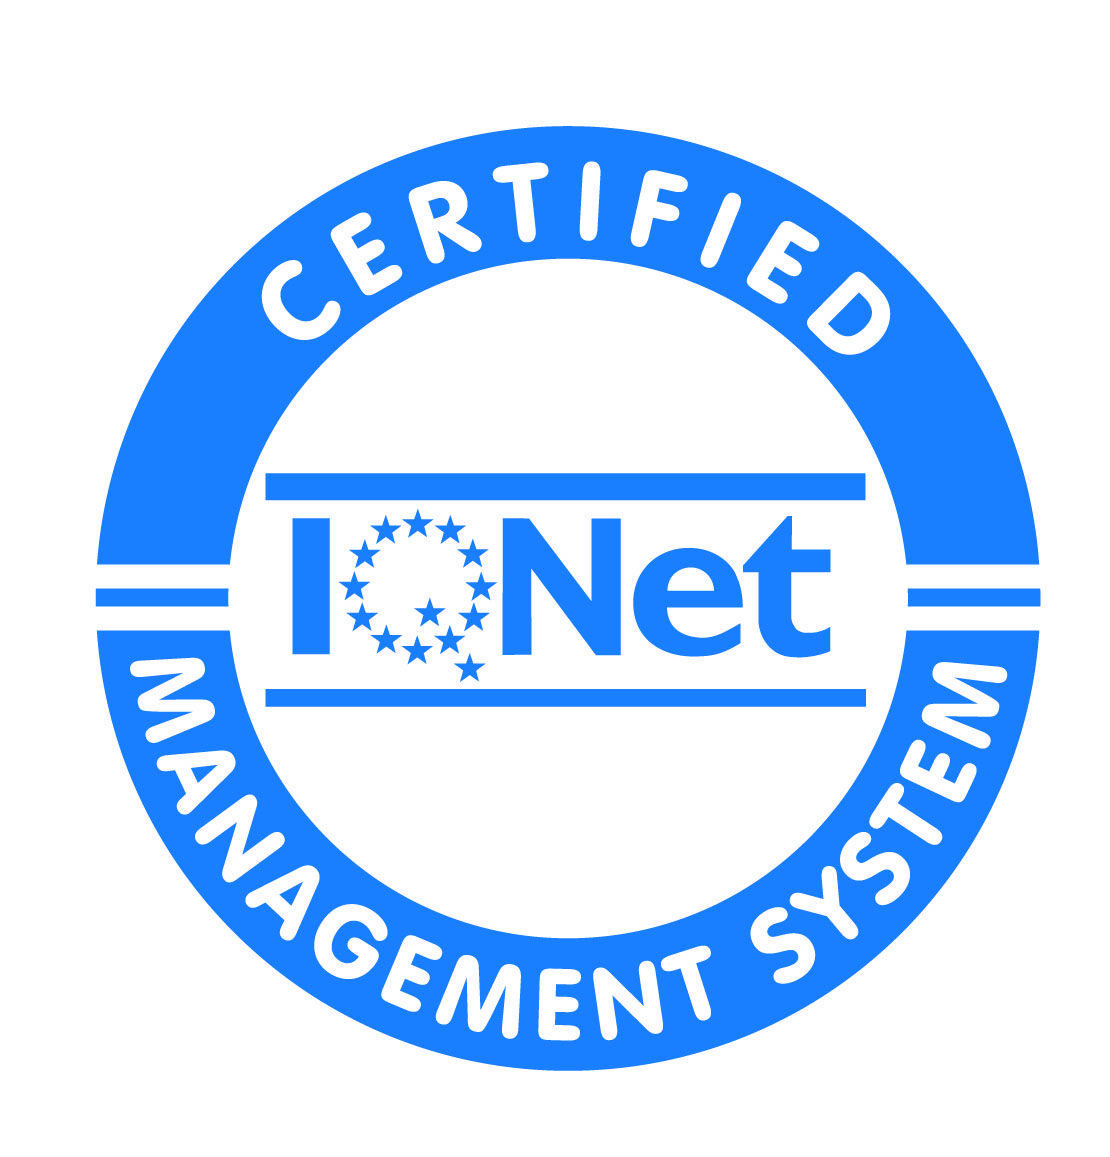 Cirtification Logo - Certification logo/symbols